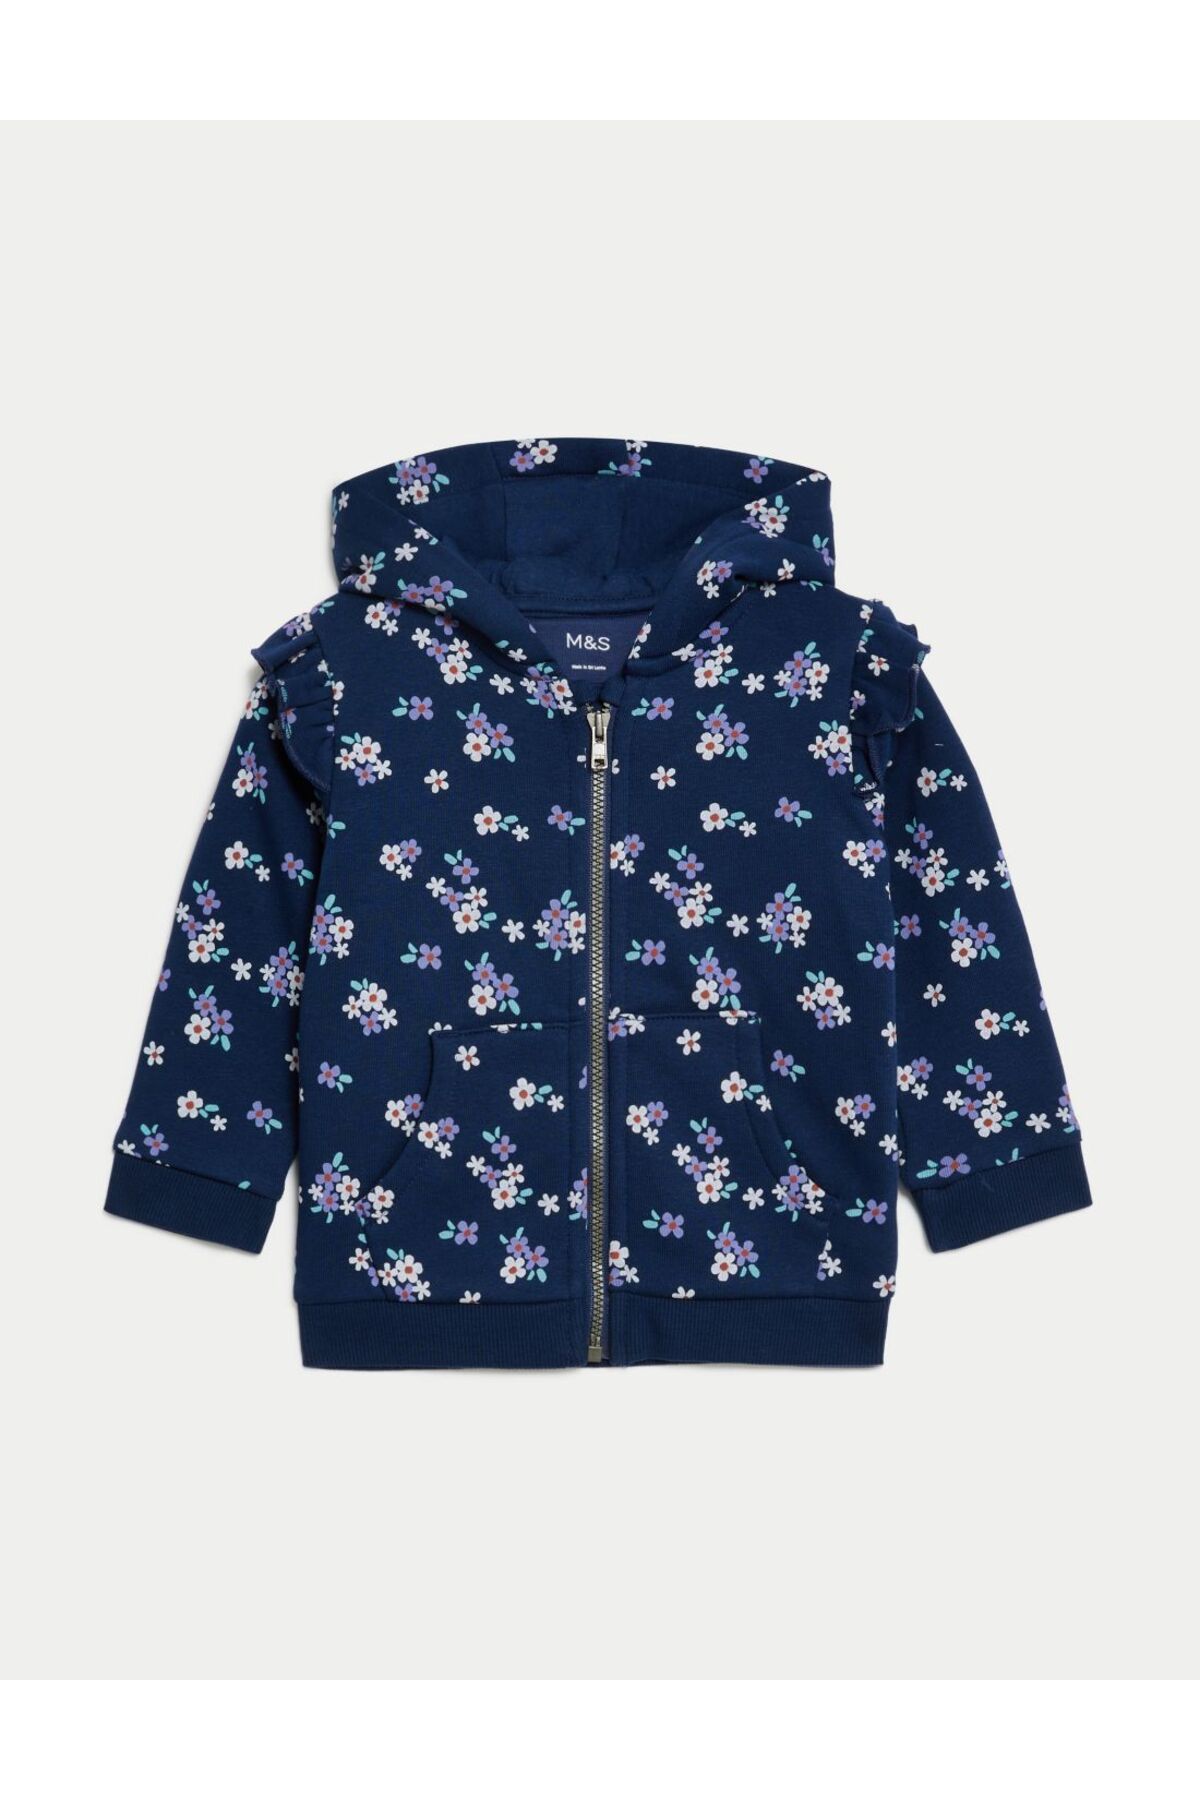 Marks & Spencer Çiçek Desenli Kapüşonlu Sweatshirt (0-3 yaş)